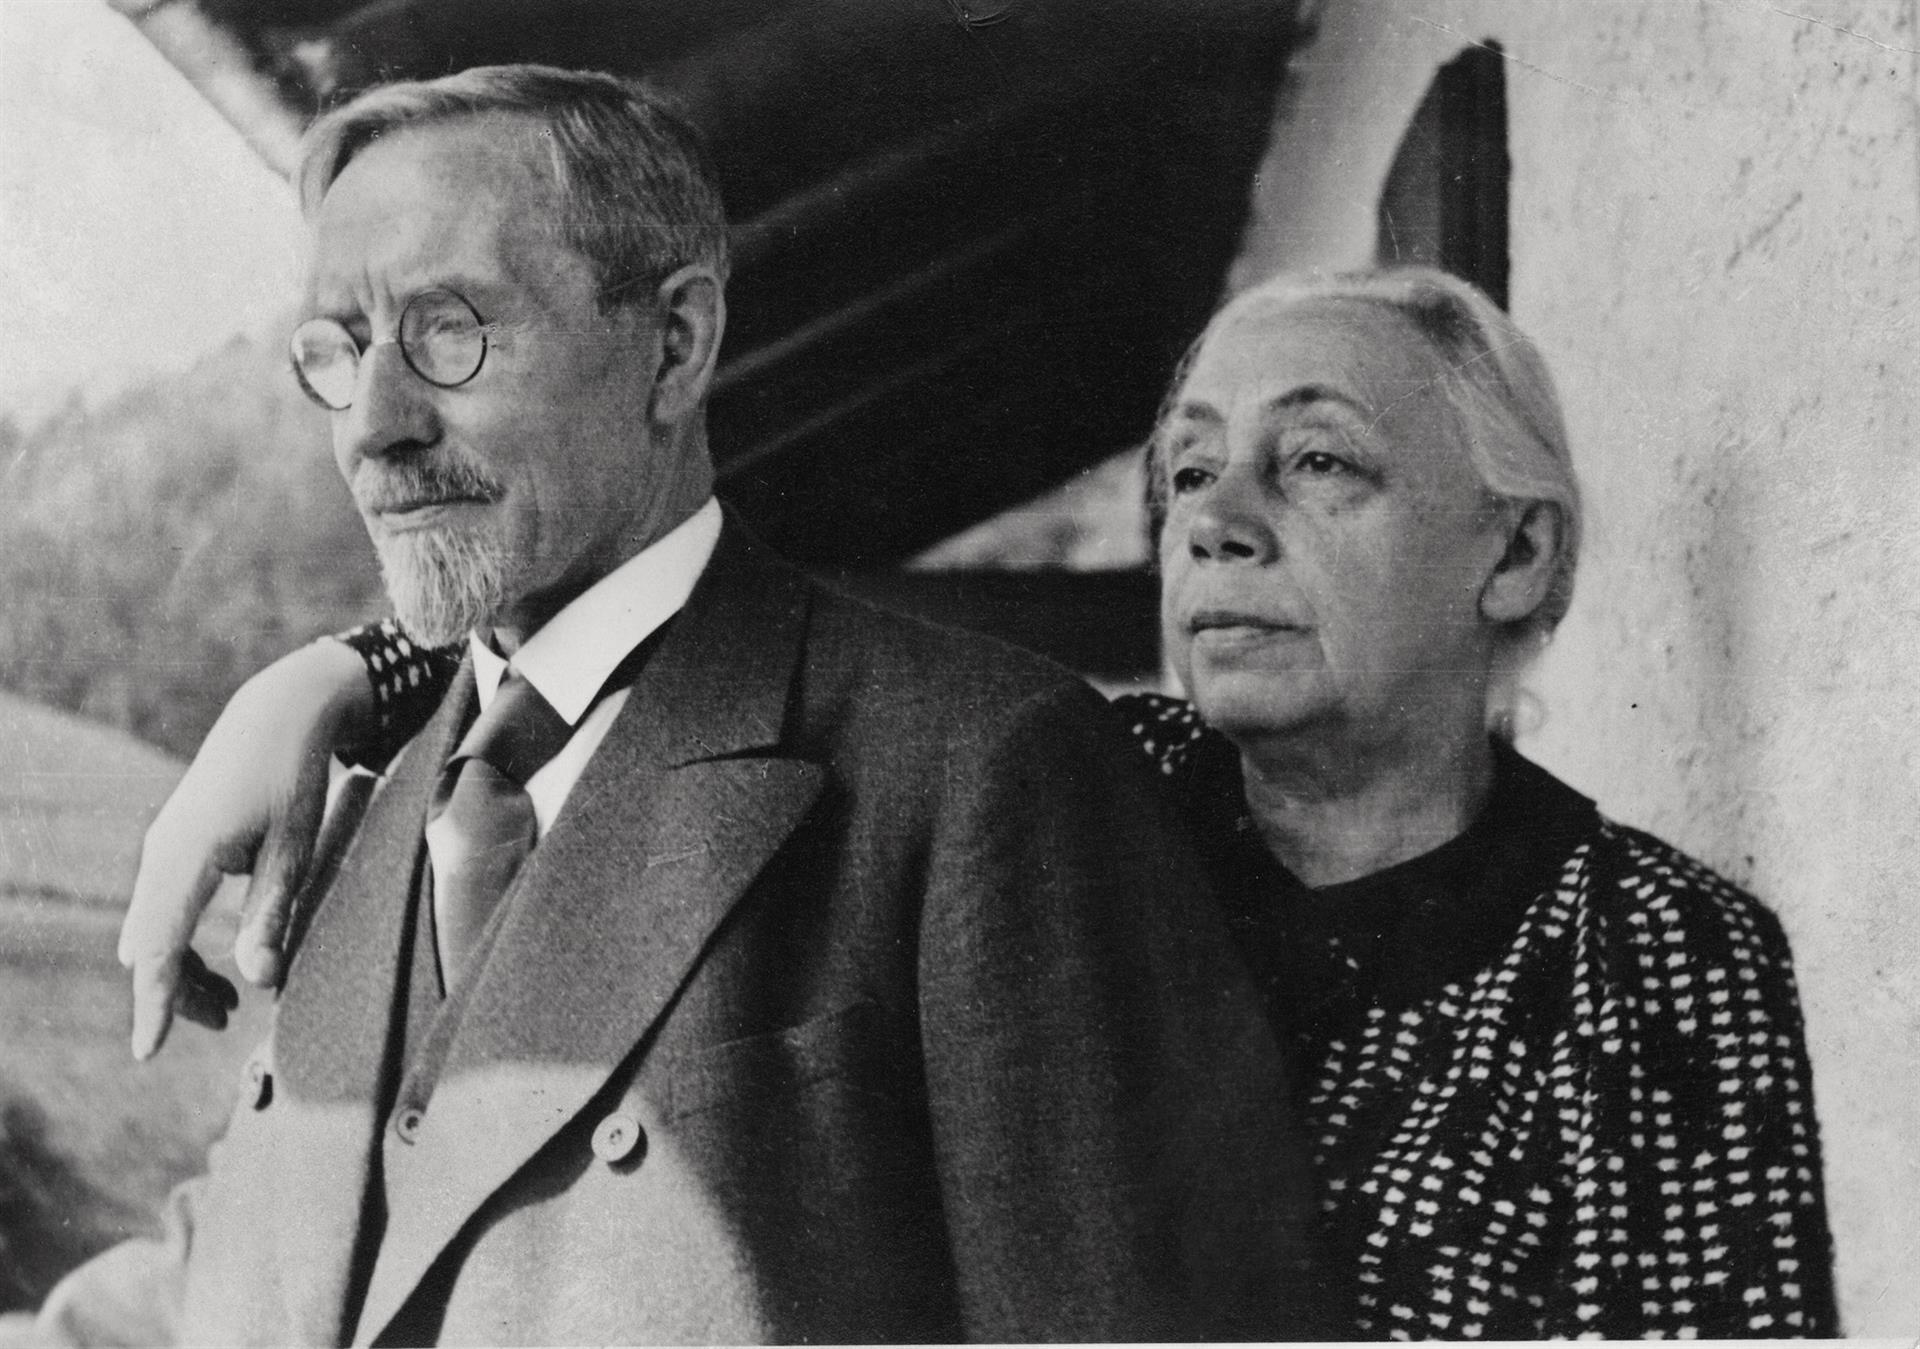 Käthe and Karl Kollwitz, 1933, photographer unknown, Kollwitz estate © Käthe Kollwitz Museum Köln